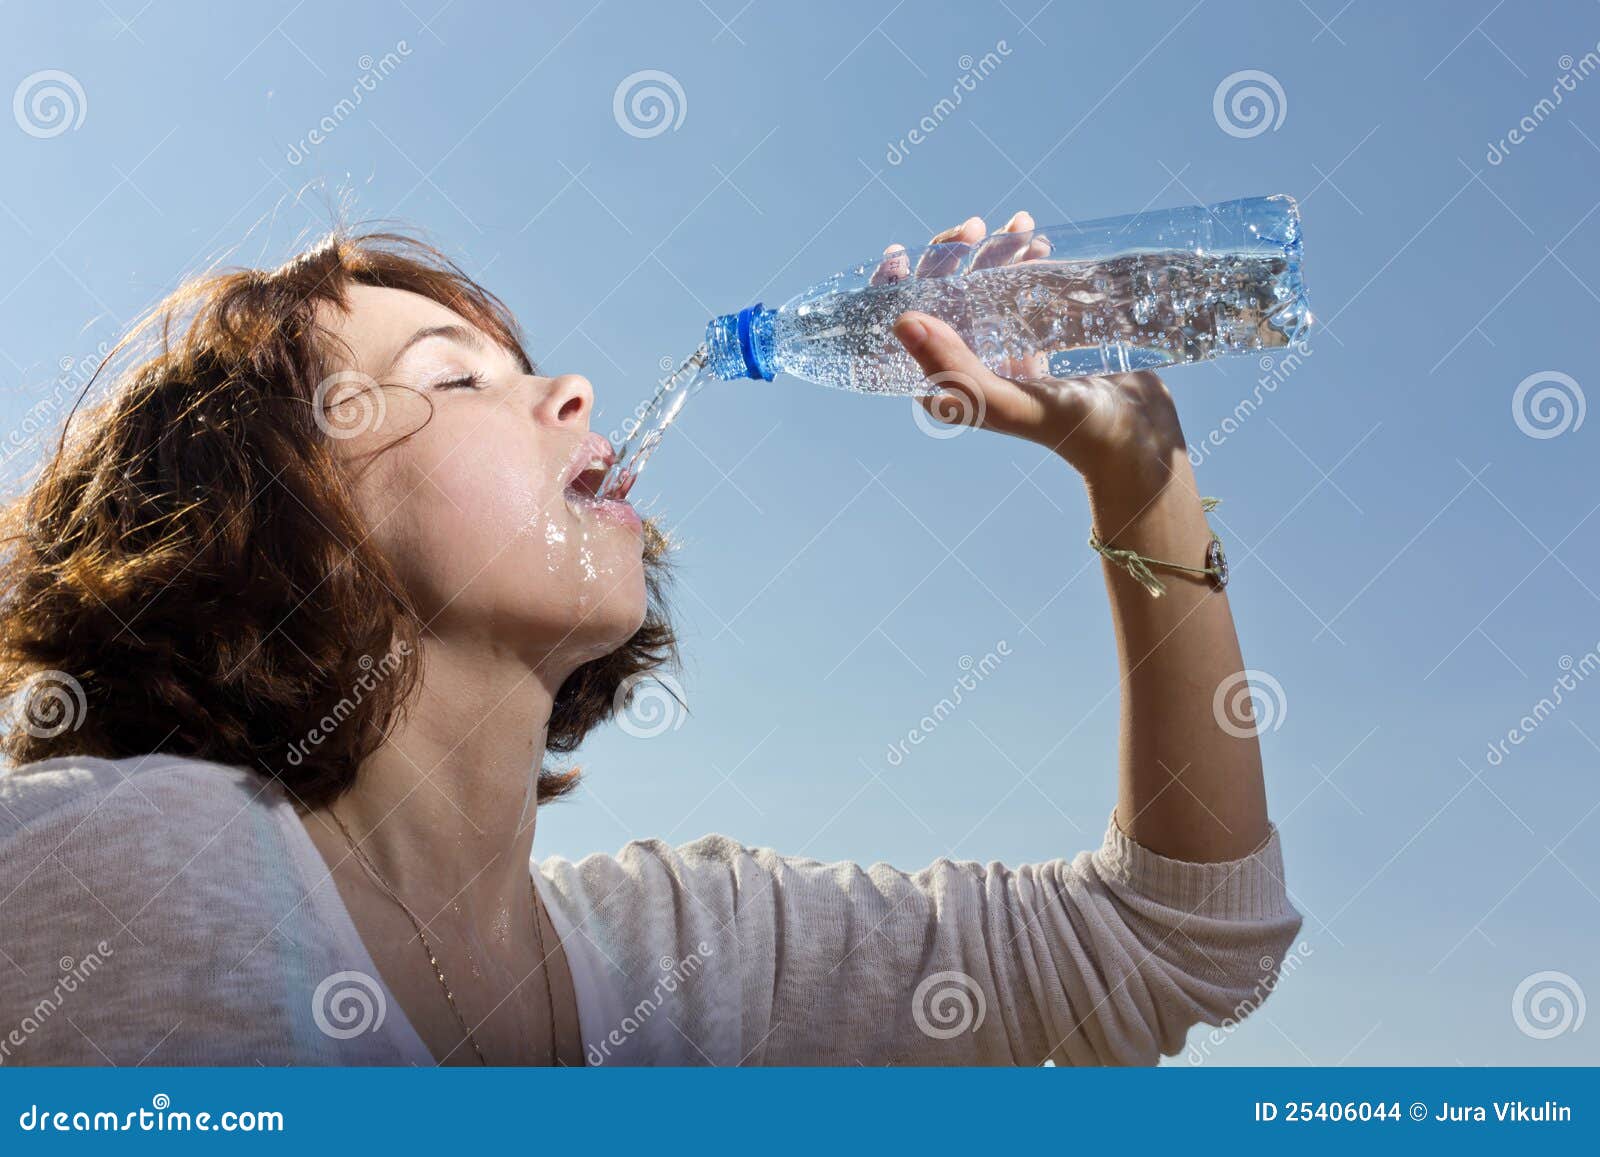 Девушка льет воду. Девушка пьет воду из бутылки. Женщина наливает воду. Жажда воды. Девушка пьет из бутылки.